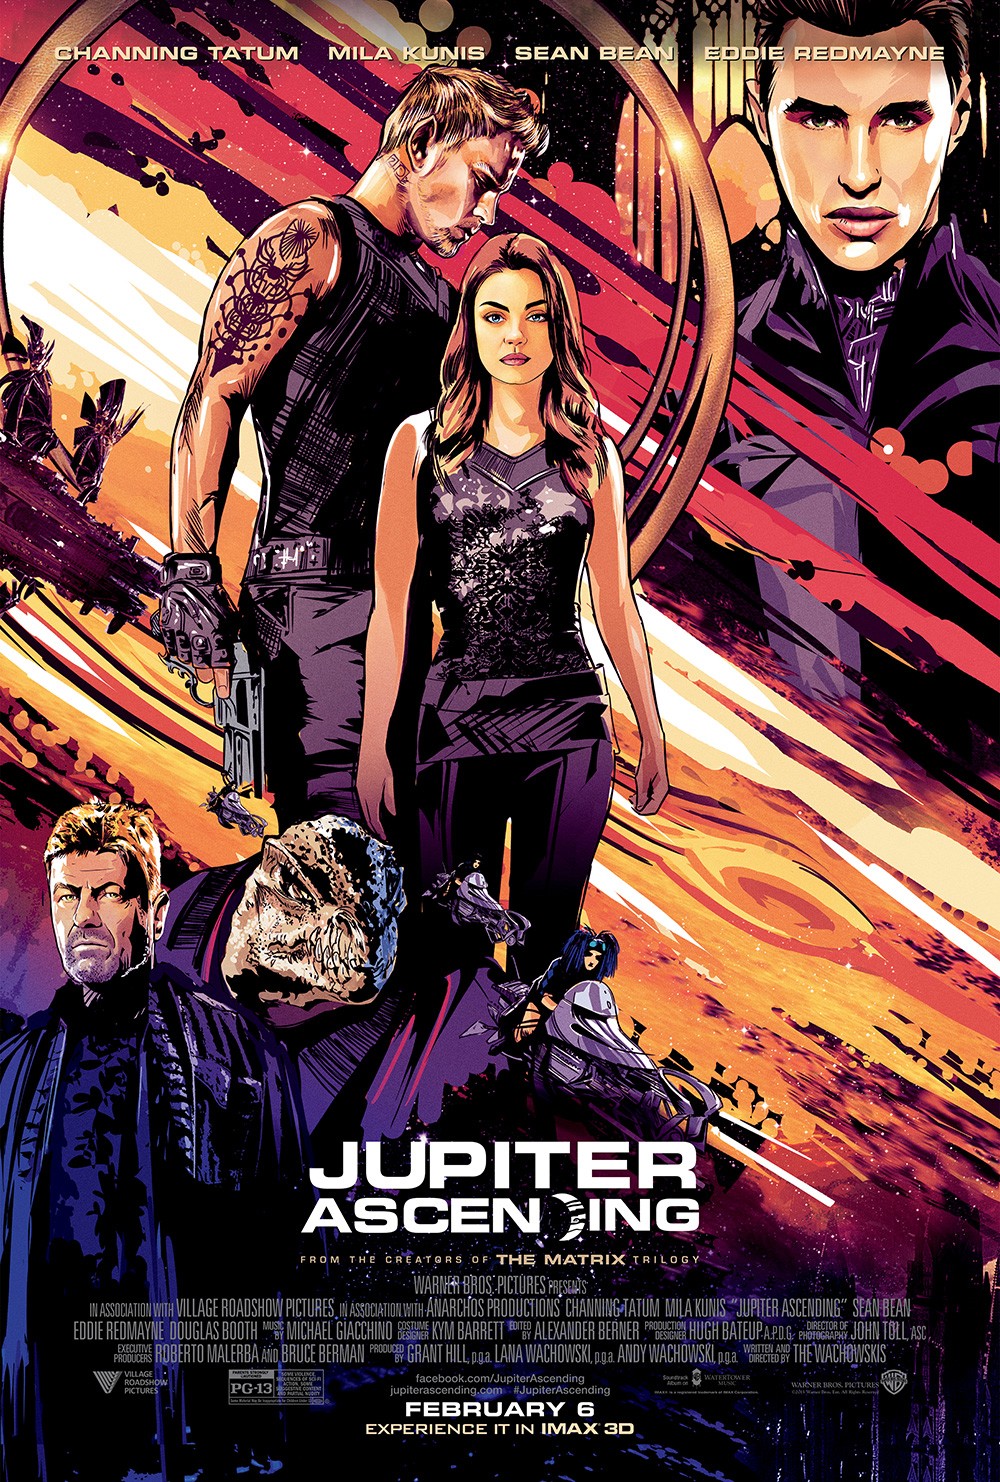 Extra Large Movie Poster Image for Jupiter Ascending (#13 of 13)